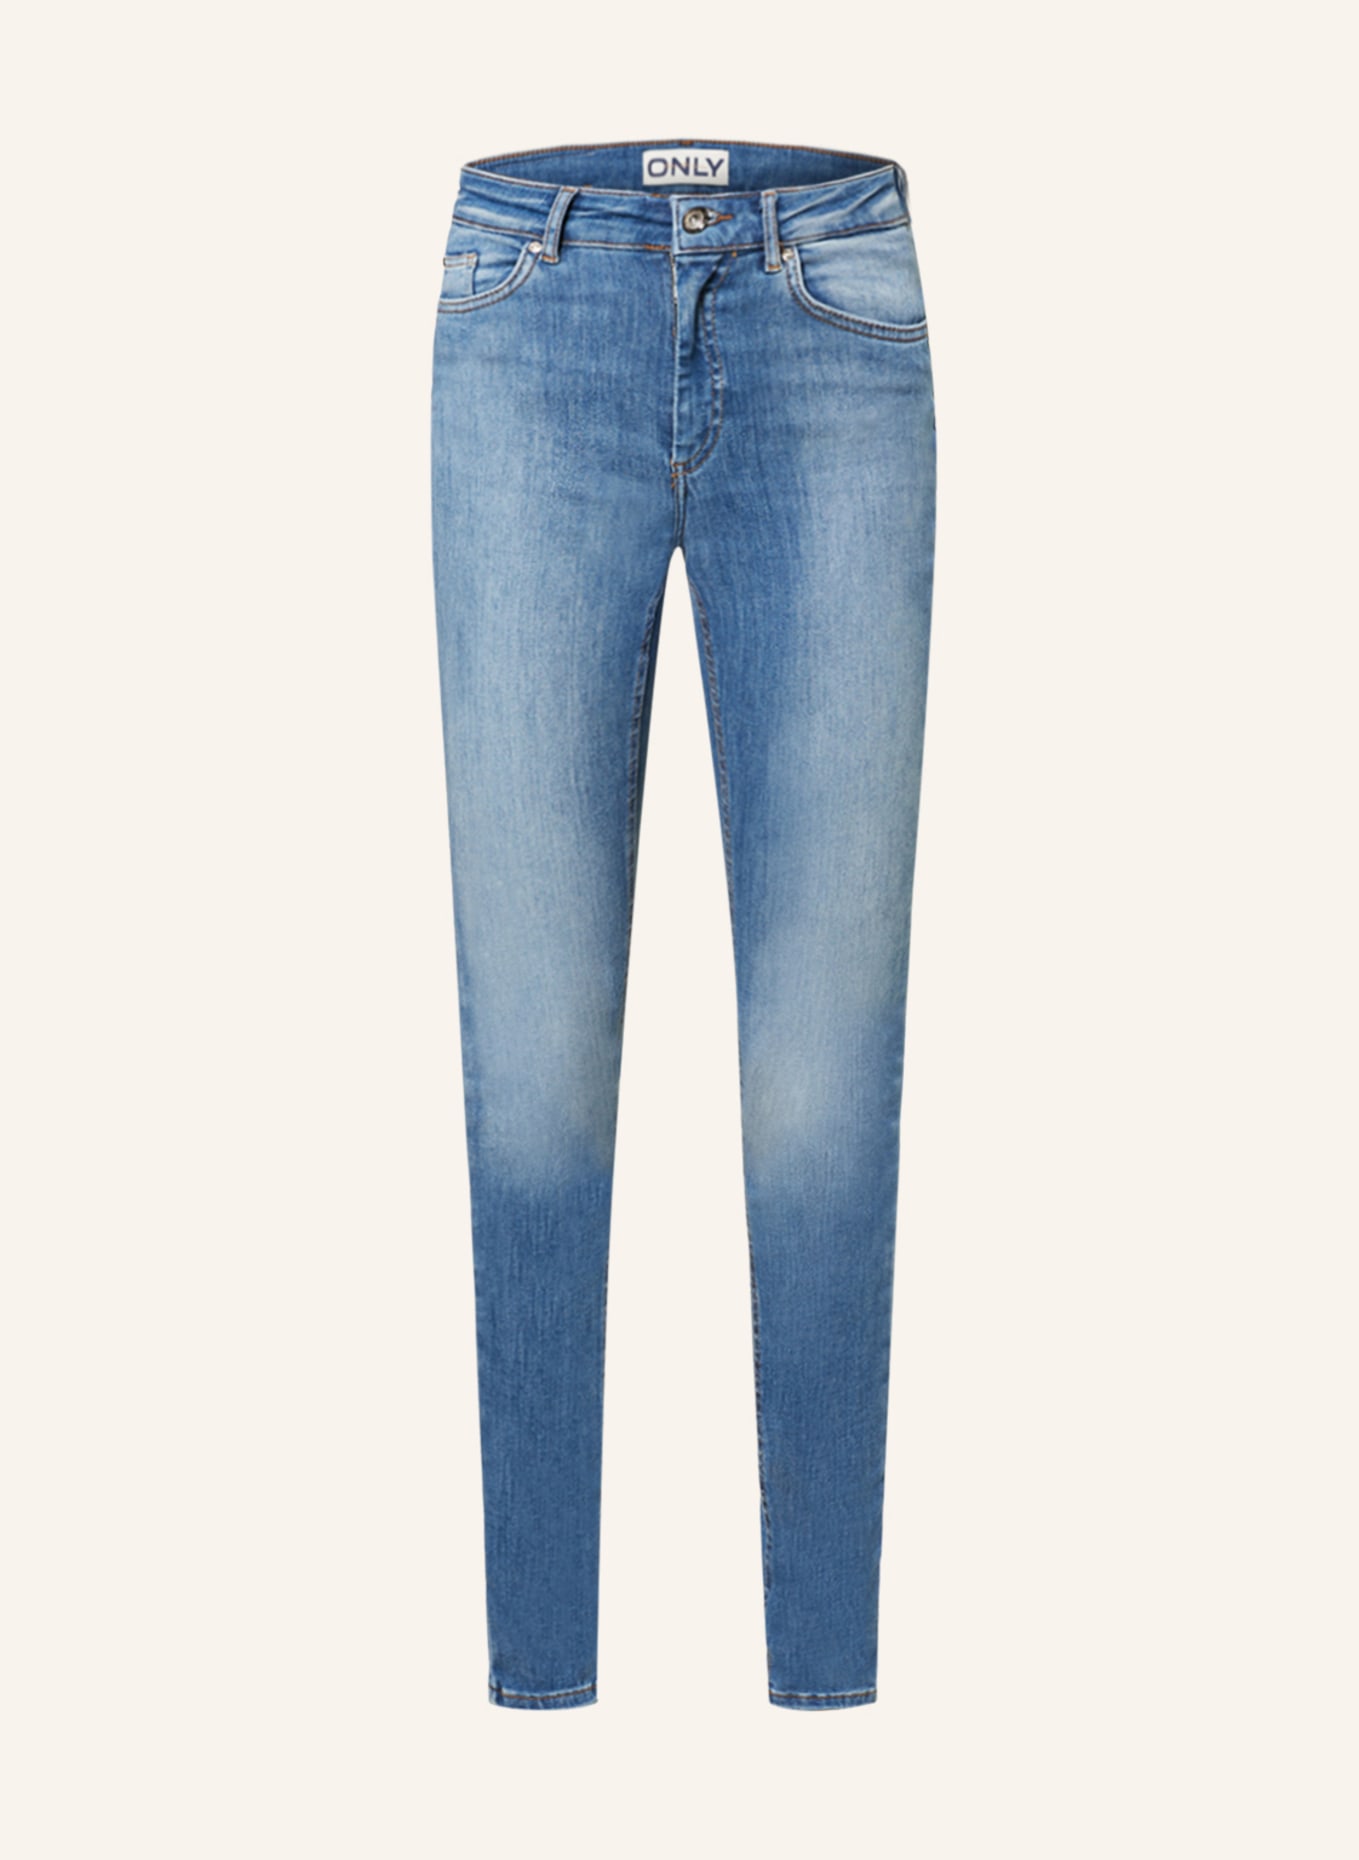 ONLY Skinny jeans, Color: LIGHT BLUE DENIM (Image 1)